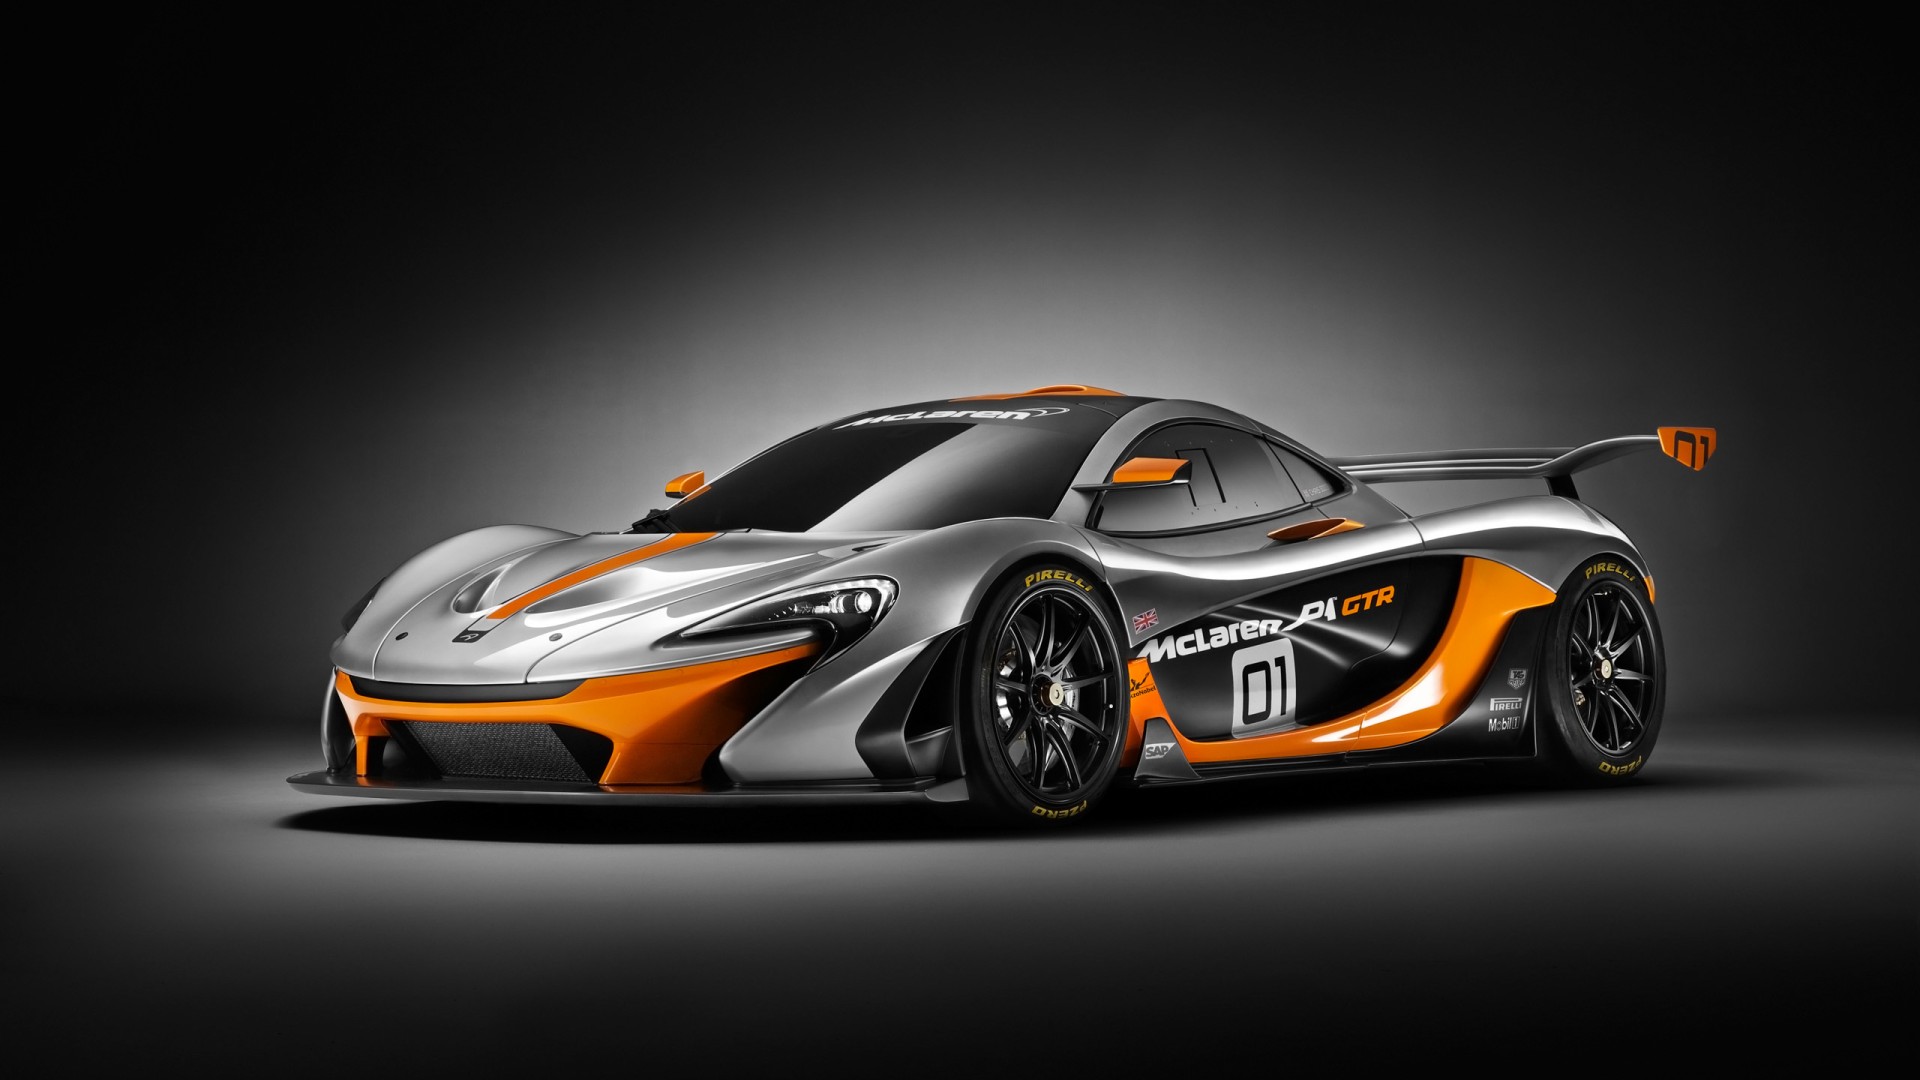 2014 McLaren P1 GTR Design Concept Wallpaper | HD Car ...